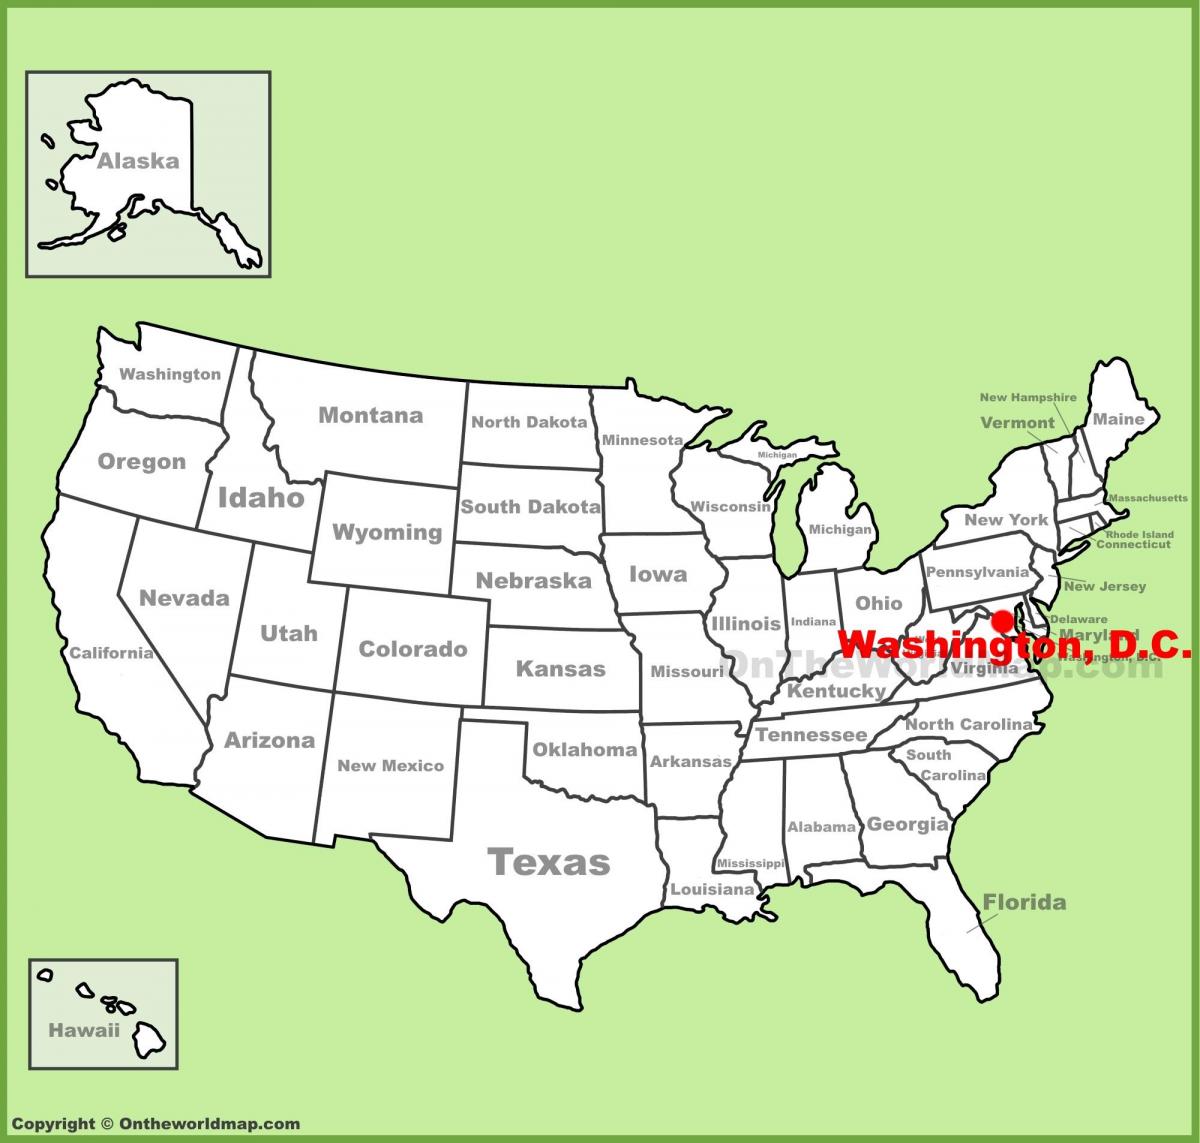 απλό χάρτη της ουάσινγκτον